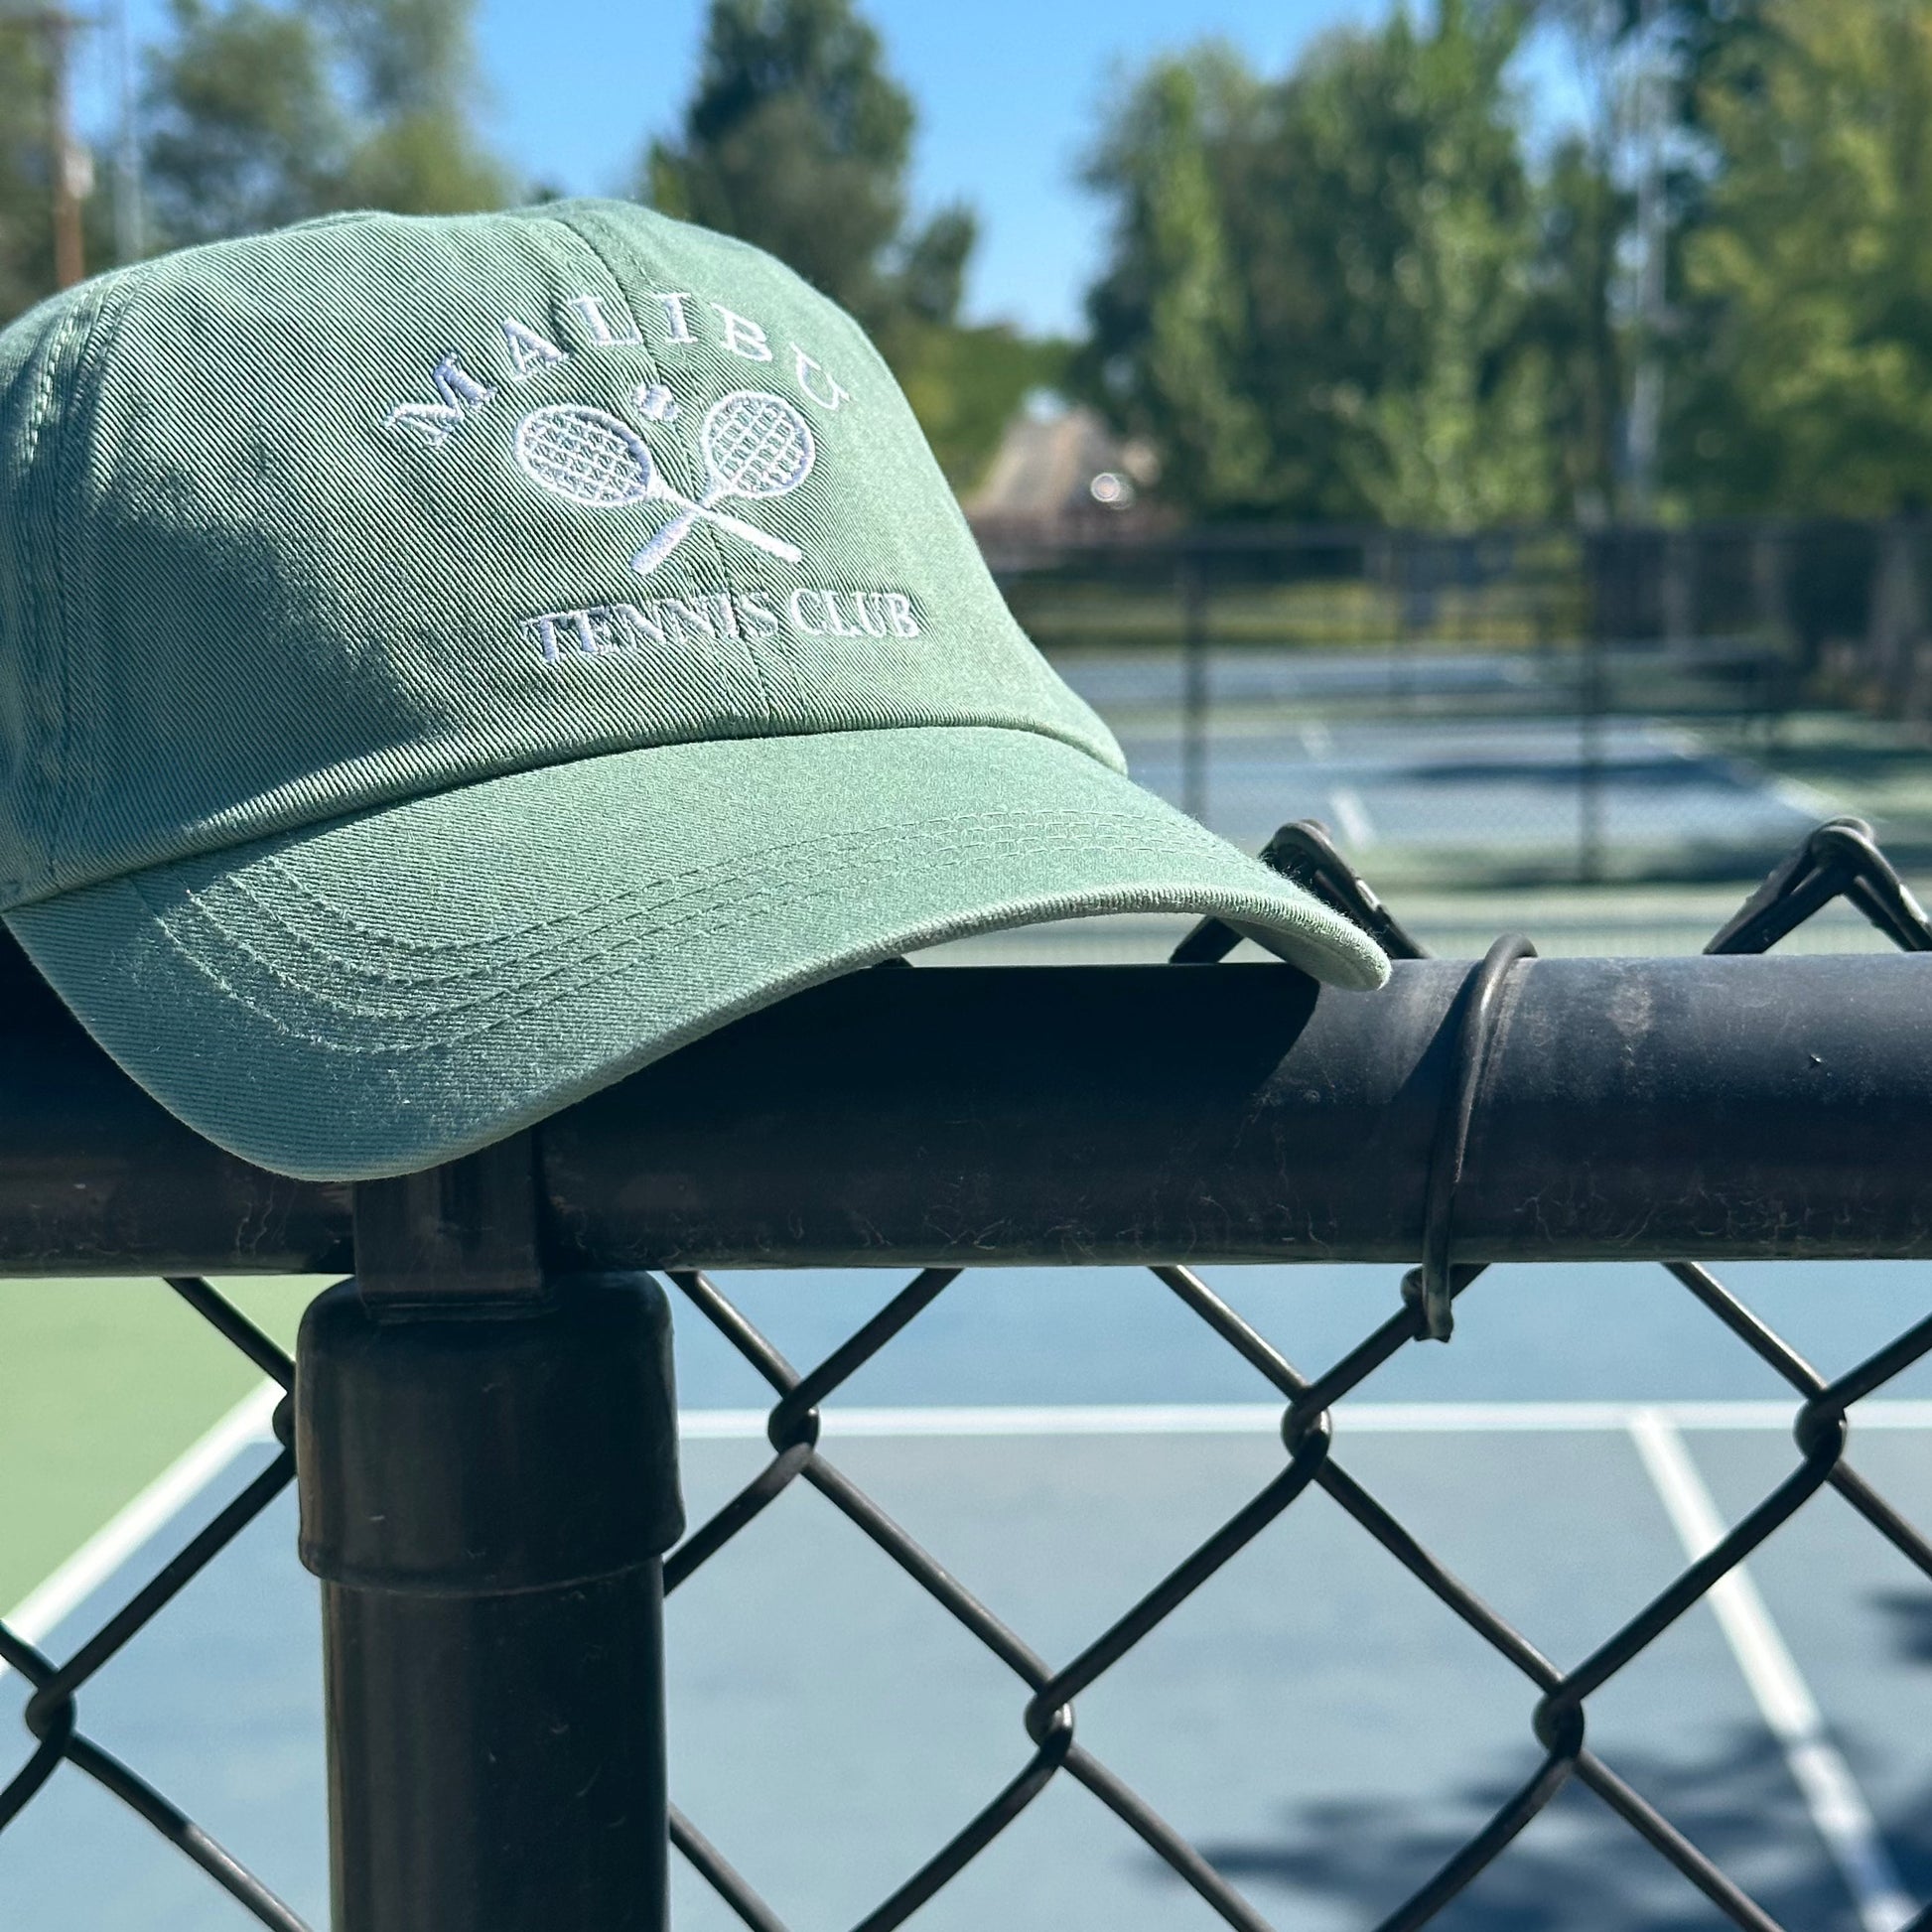 Malibu tennis club – dad Athletic Wear Ever Green hat